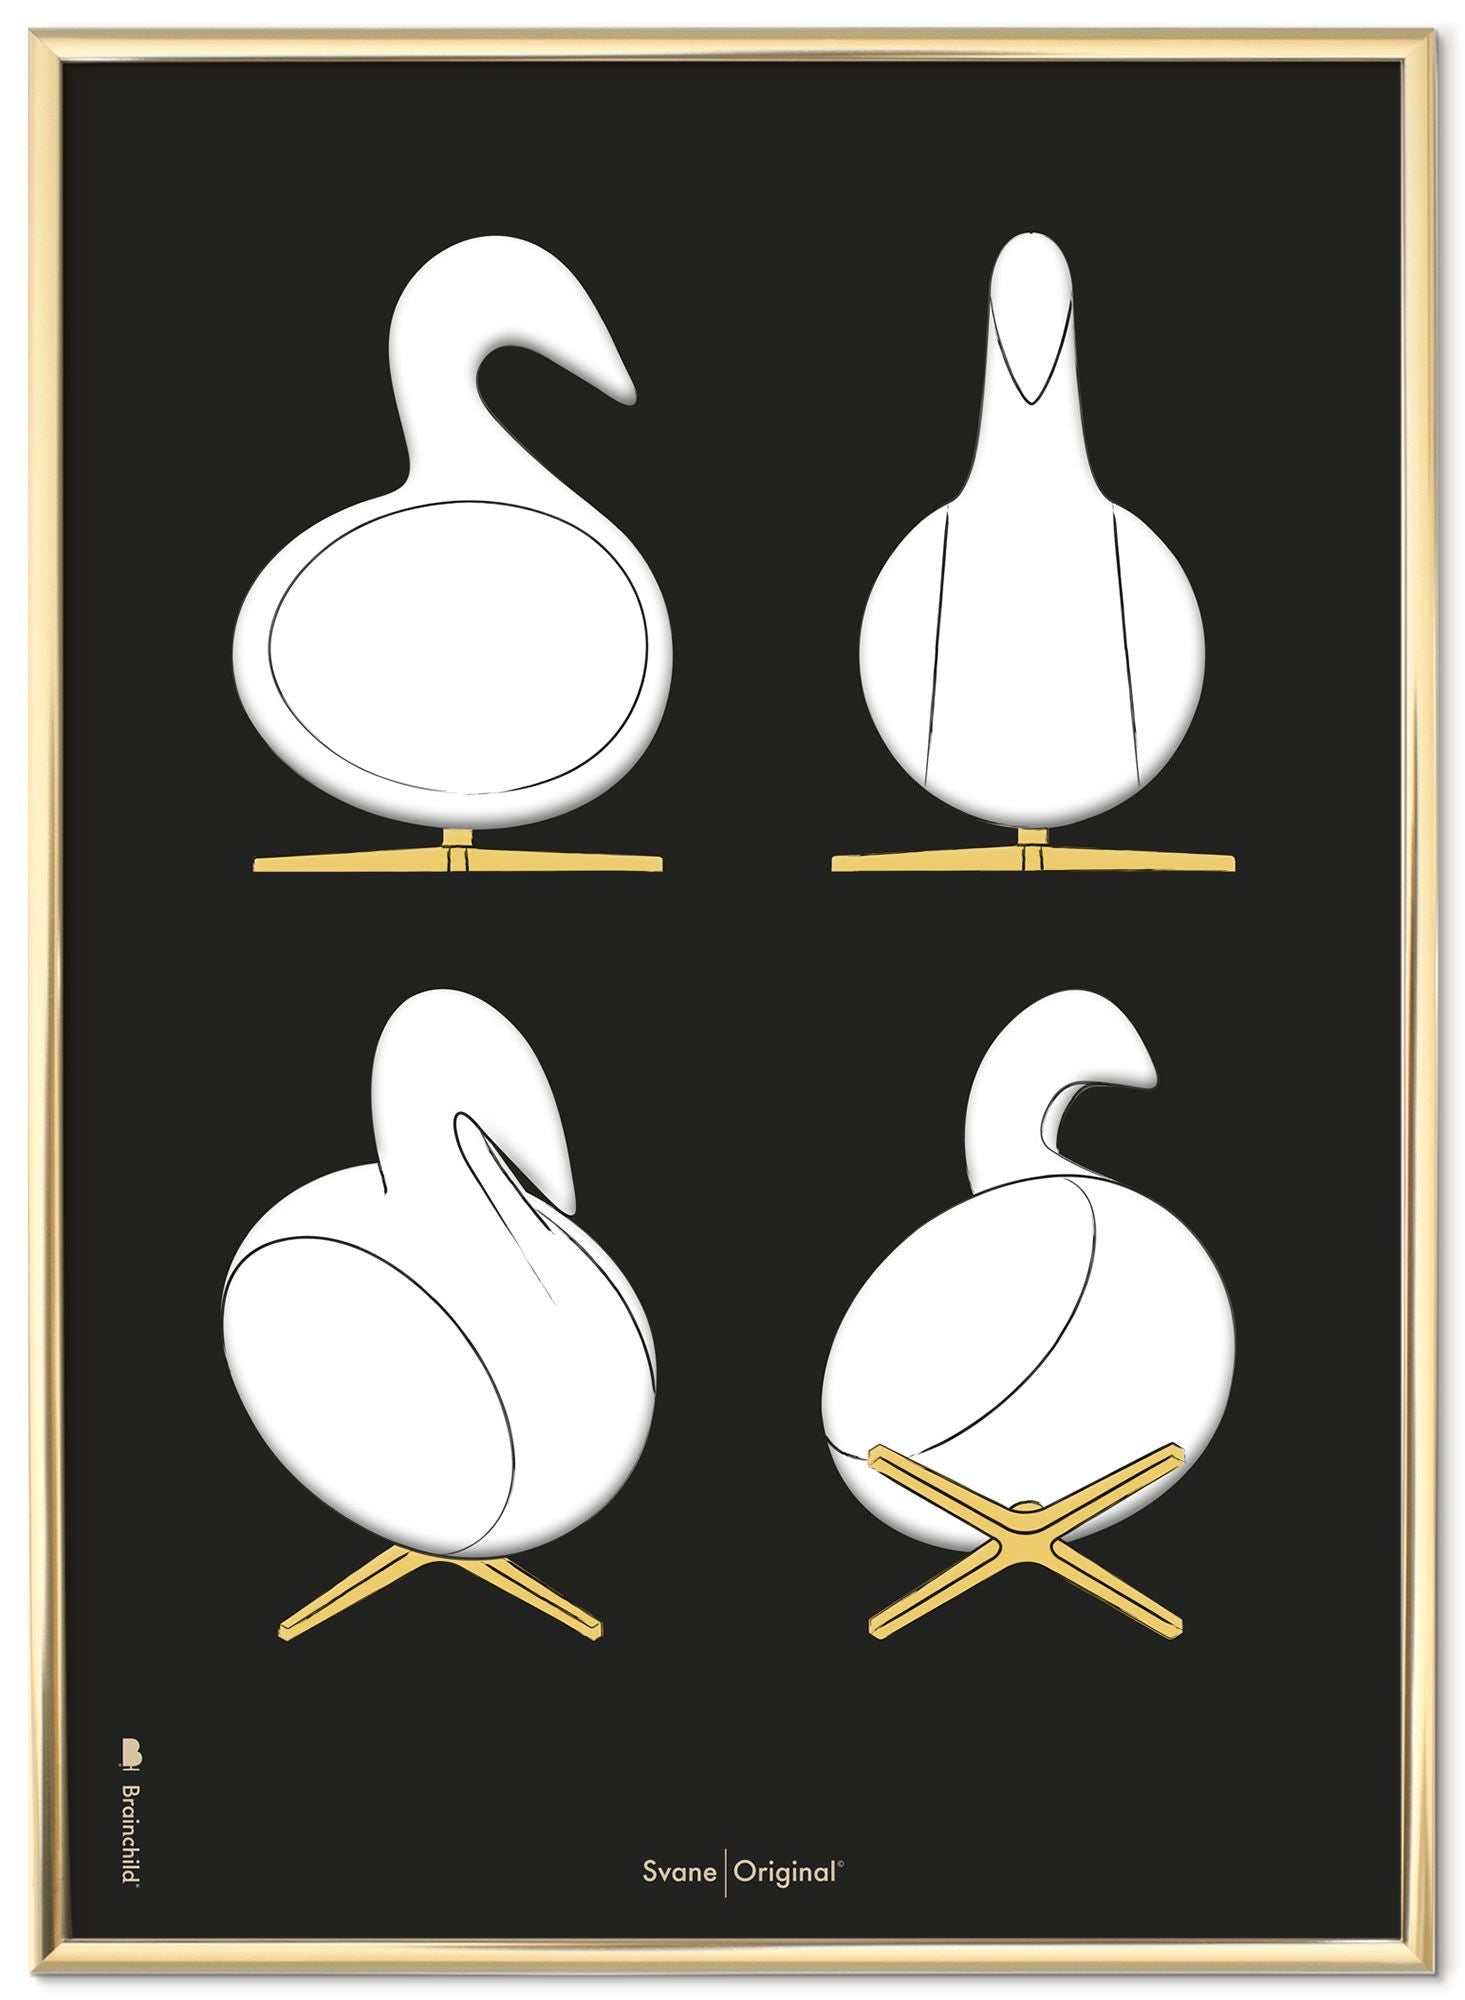 Brainchild Swan Design Sketches Poster Frame lavet af messingfarvet metal 50x70 cm, sort baggrund